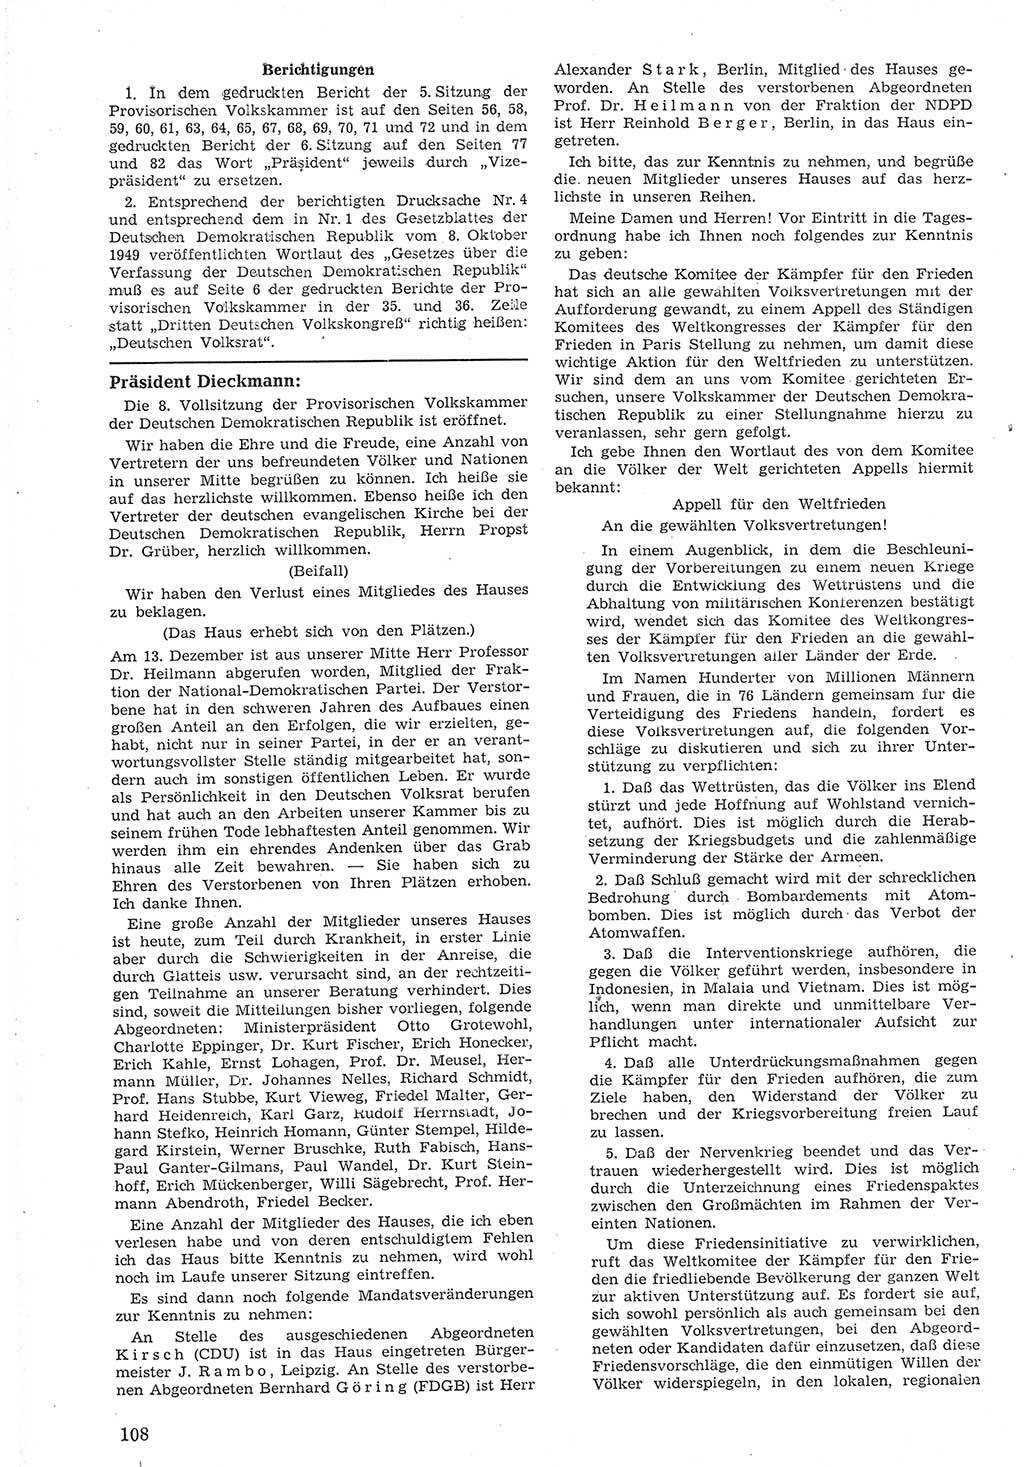 Provisorische Volkskammer (VK) der Deutschen Demokratischen Republik (DDR) 1949-1950, Dokument 120 (Prov. VK DDR 1949-1950, Dok. 120)